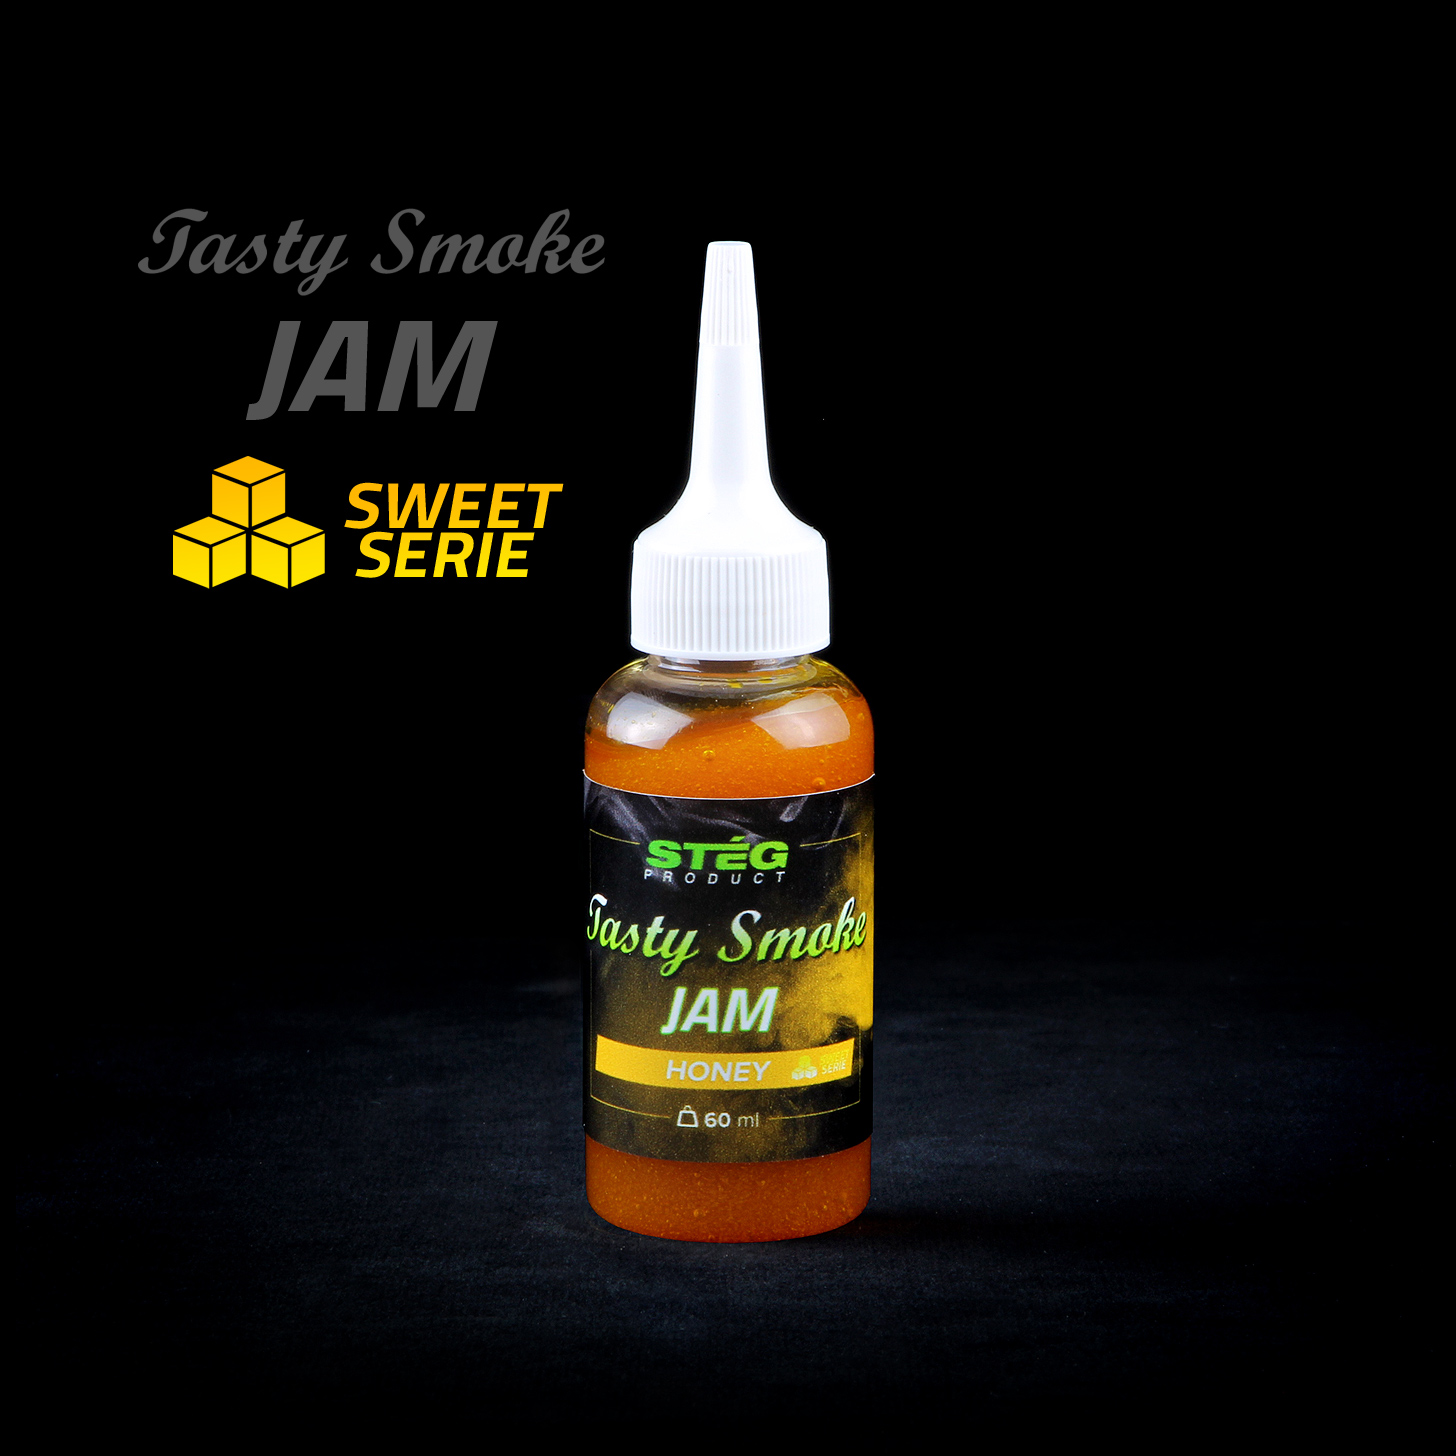 Stg Tasty Smoke Jam Honey  60ml